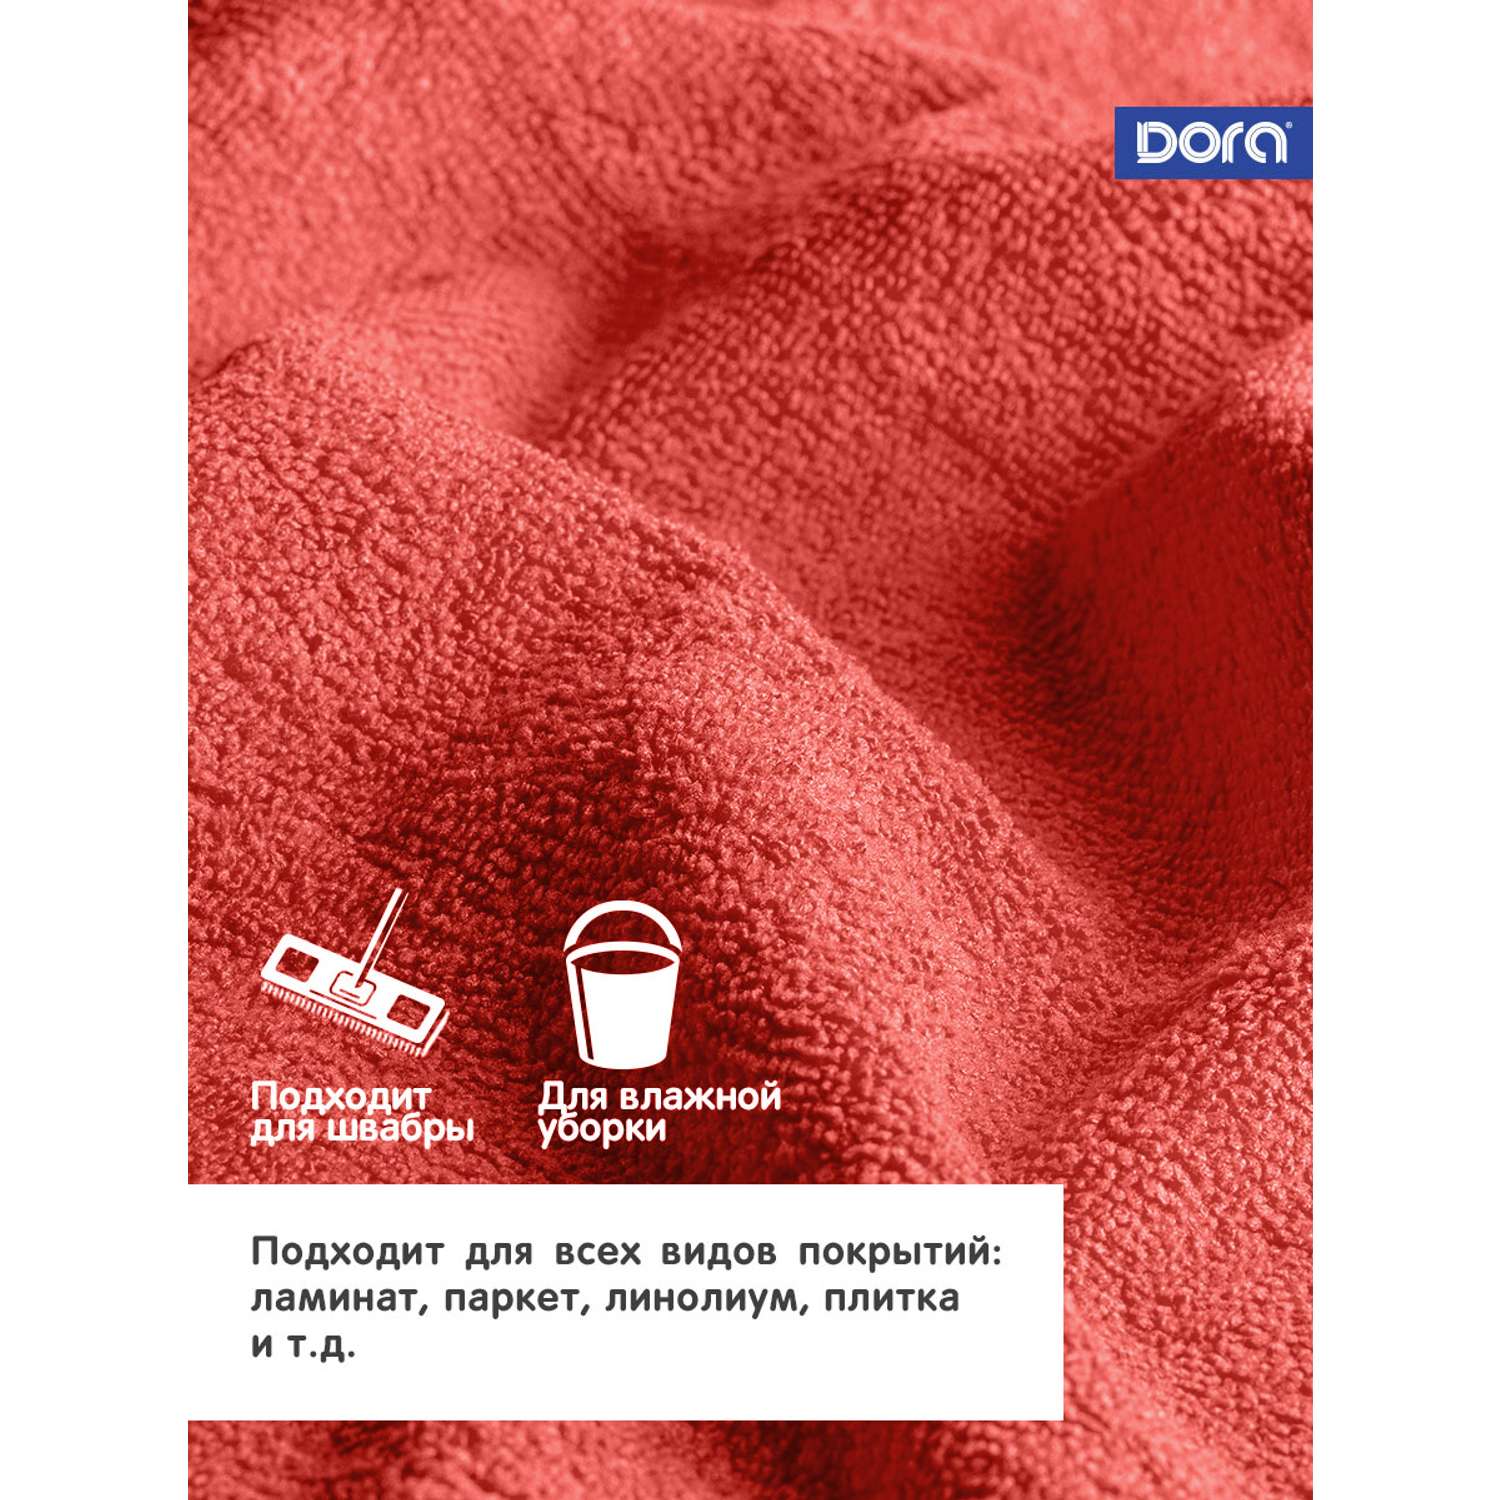 Салфетка из микрофибры DORA для мытья пола 70х100 см - фото 2